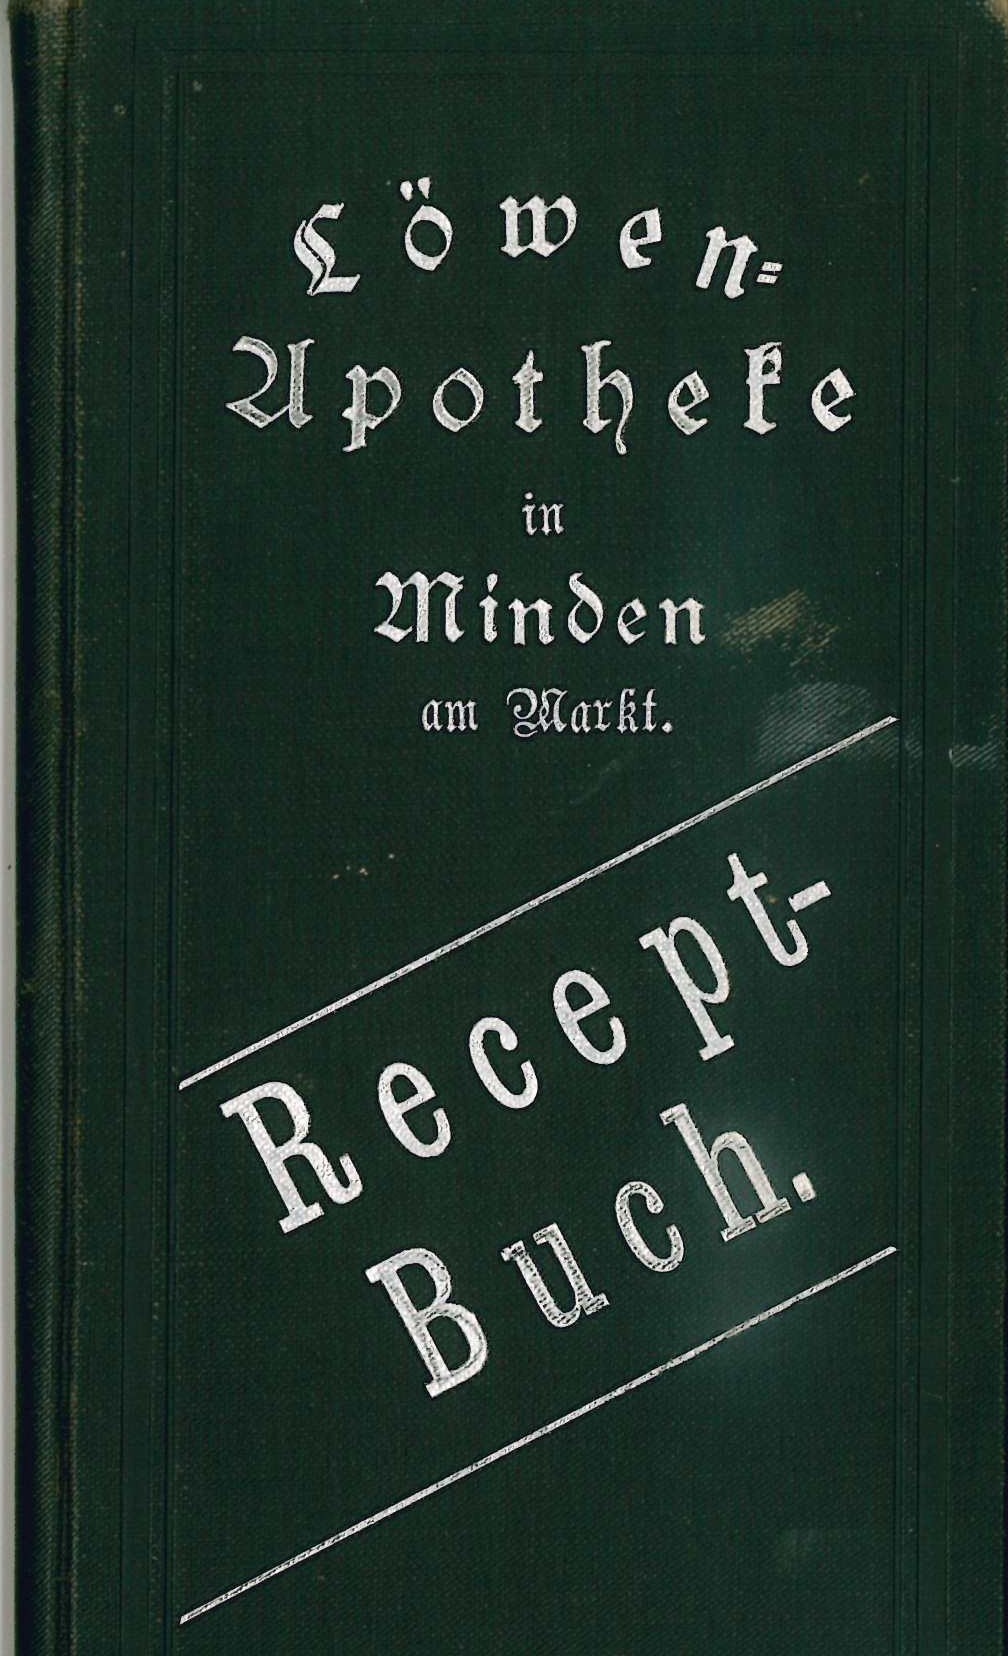 Recept-Buch. Dr. Hartmann - Löwen-Apotheke in Minden am Markt (Mindener Museum RR-R)